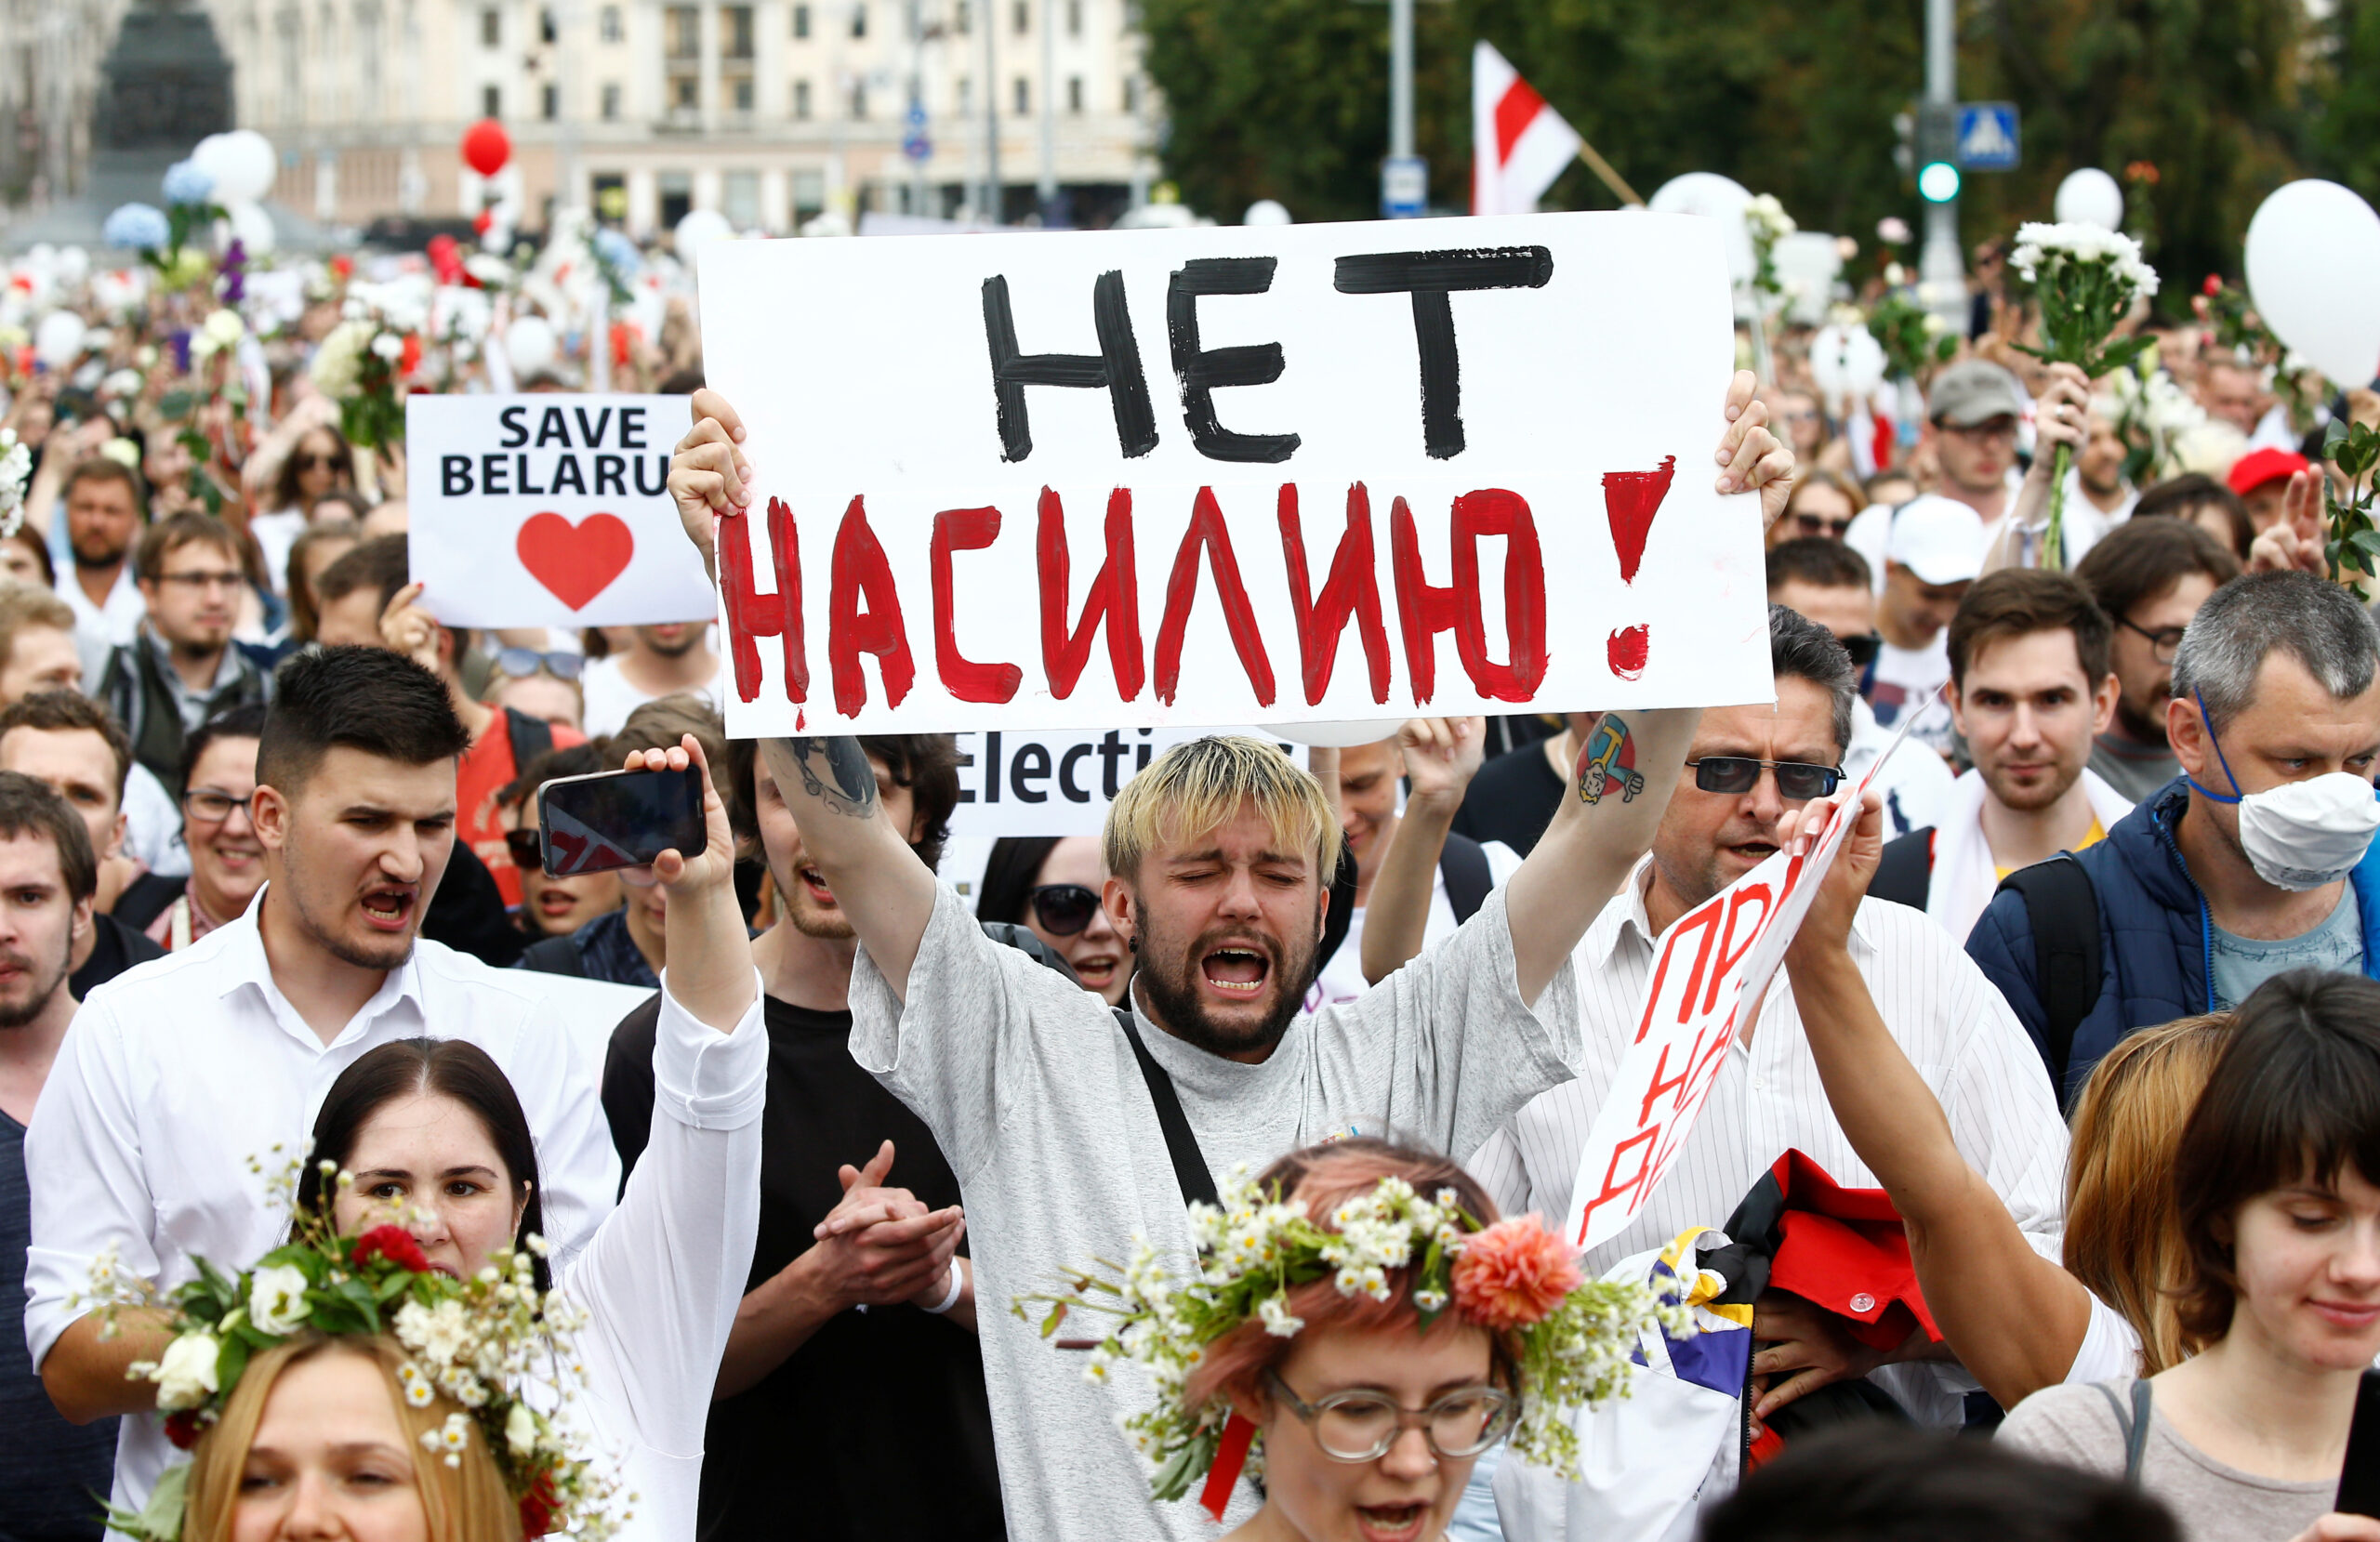 Участники протестной демонстрации в Минске. Фото VASILY FEDOSENKO / TASS / Scanpix / Leta